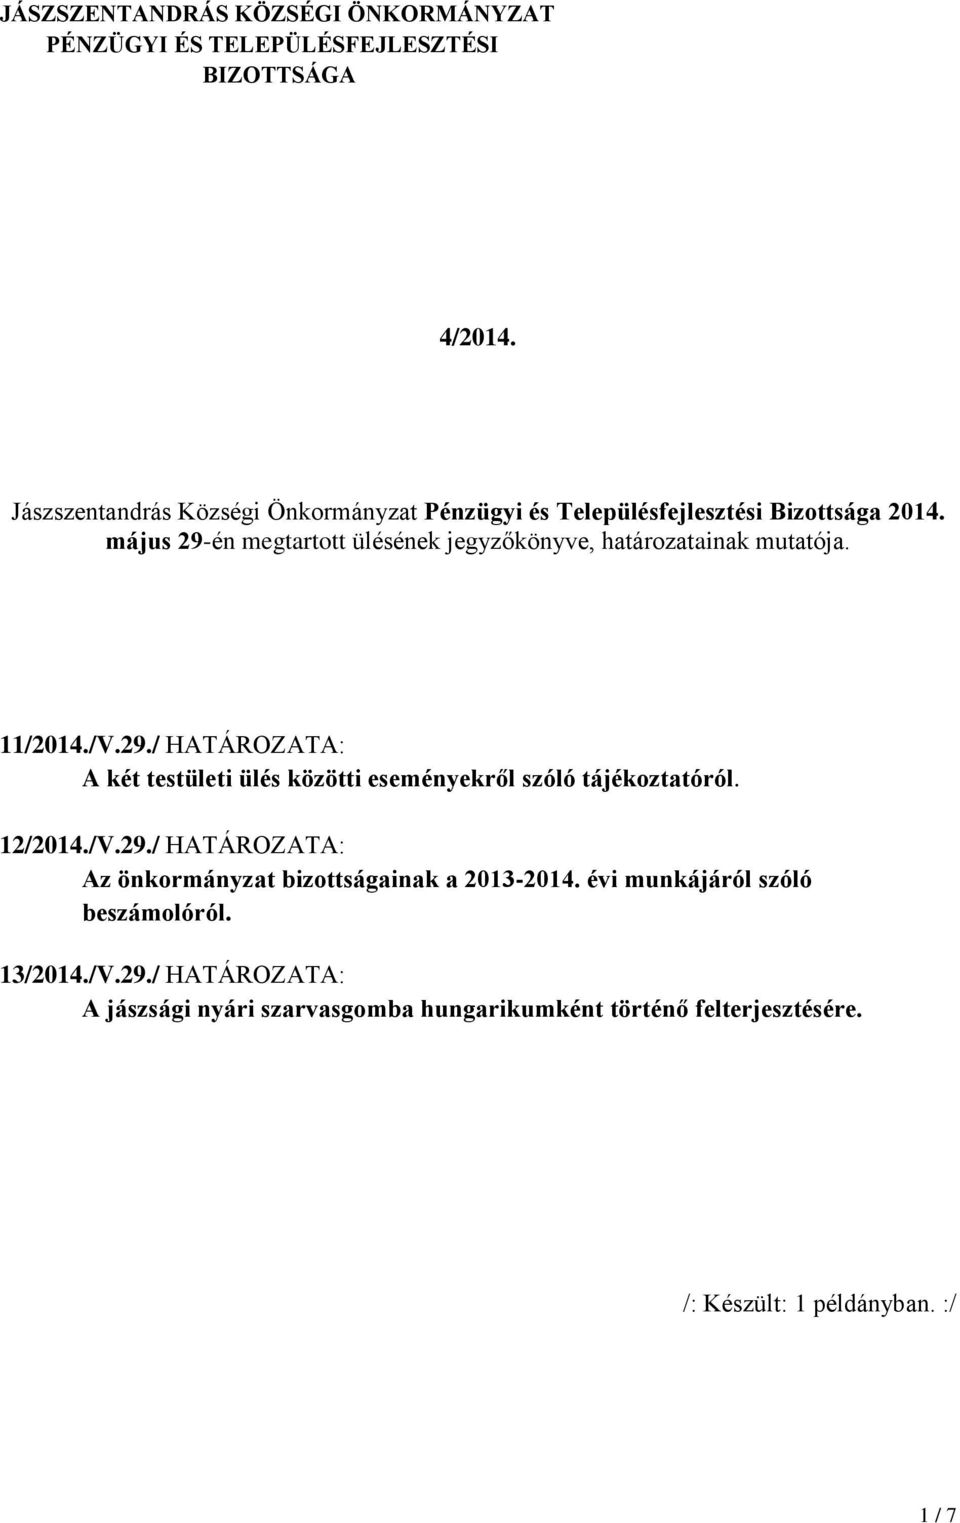 május 29-én megtartott ülésének jegyzőkönyve, határozatainak mutatója. 11/2014./V.29./ HATÁROZATA: A két testületi ülés közötti eseményekről szóló tájékoztatóról.